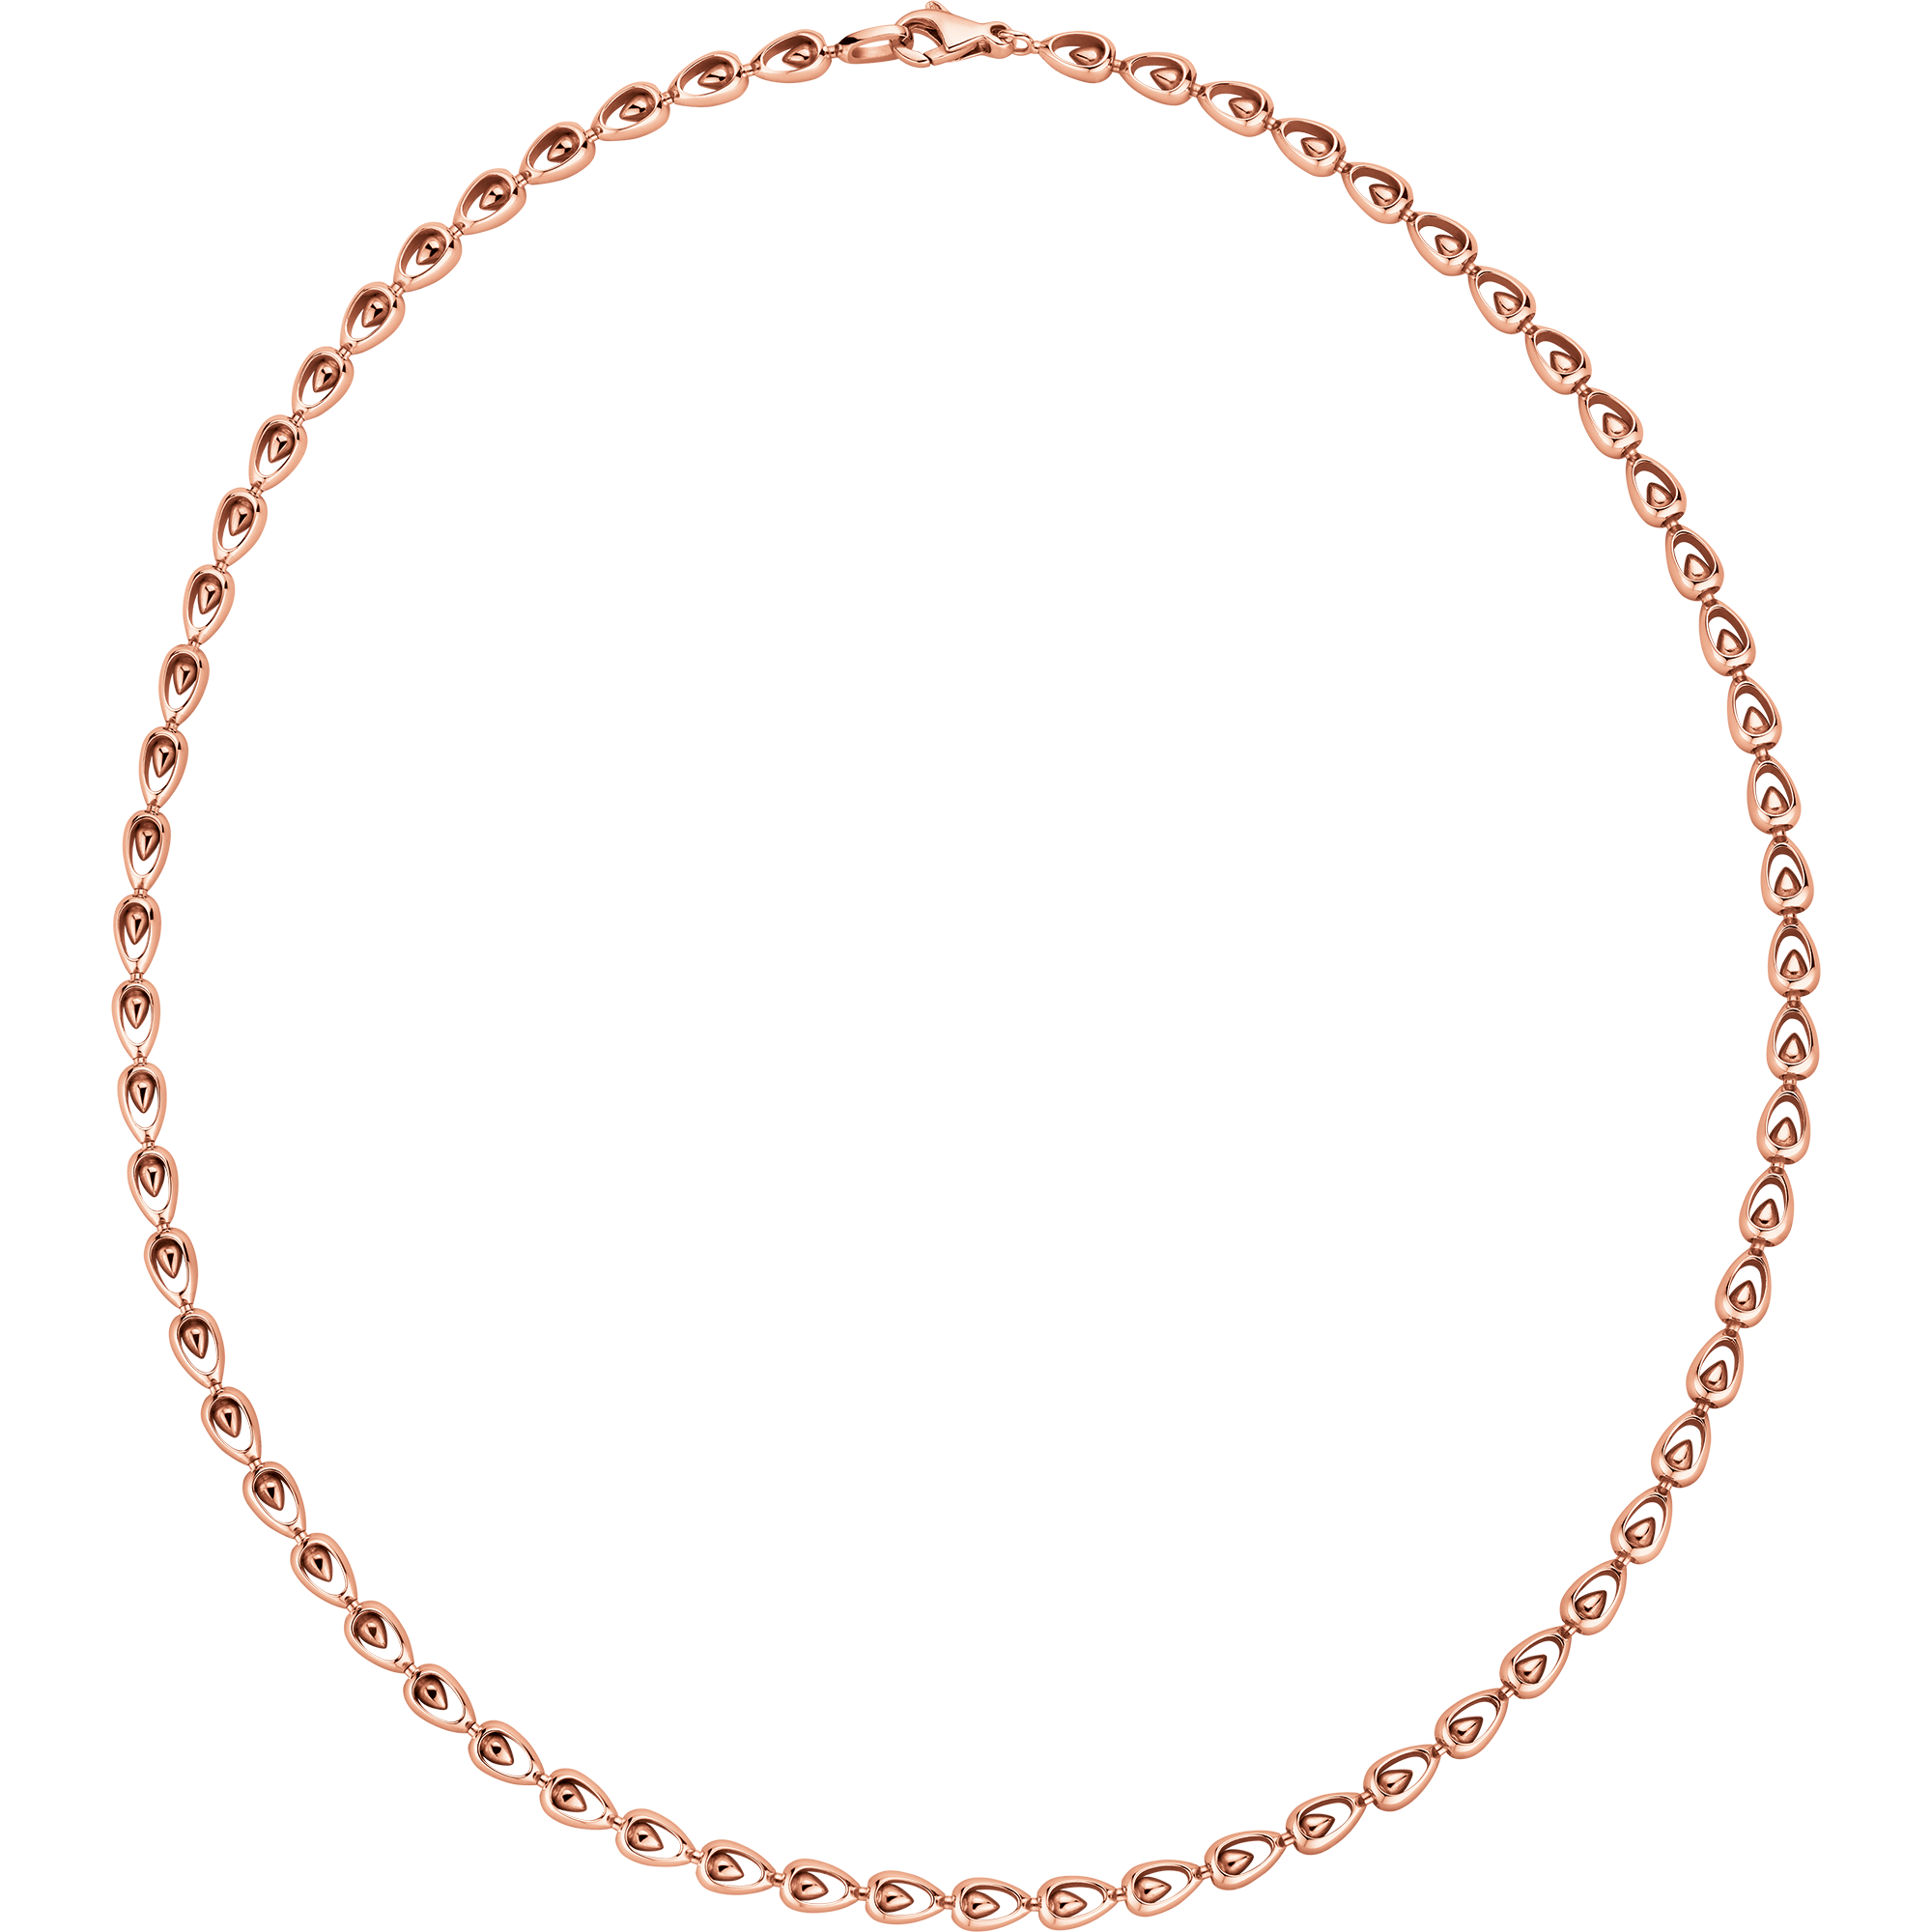 Omega Dewdrop Collar, Oro rojo de 18 qt - N602BG0000105